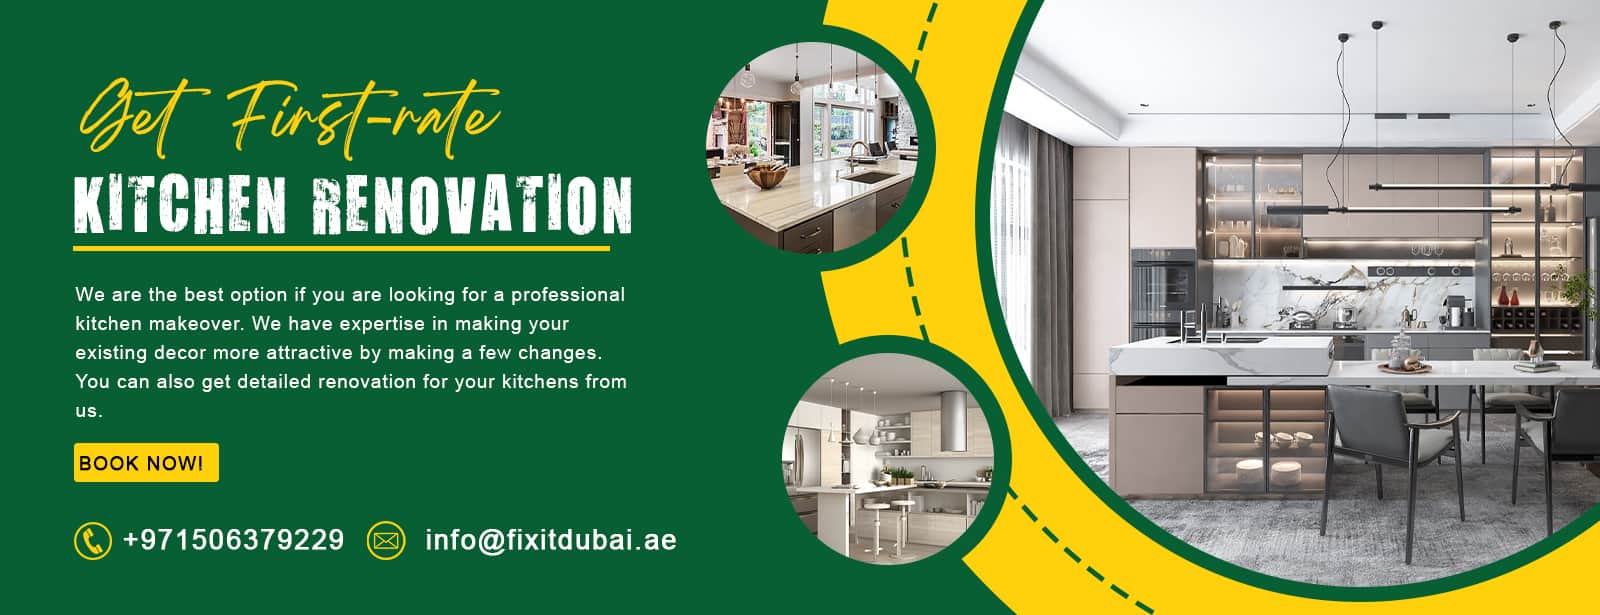 Kitchen renovation Dubai banner